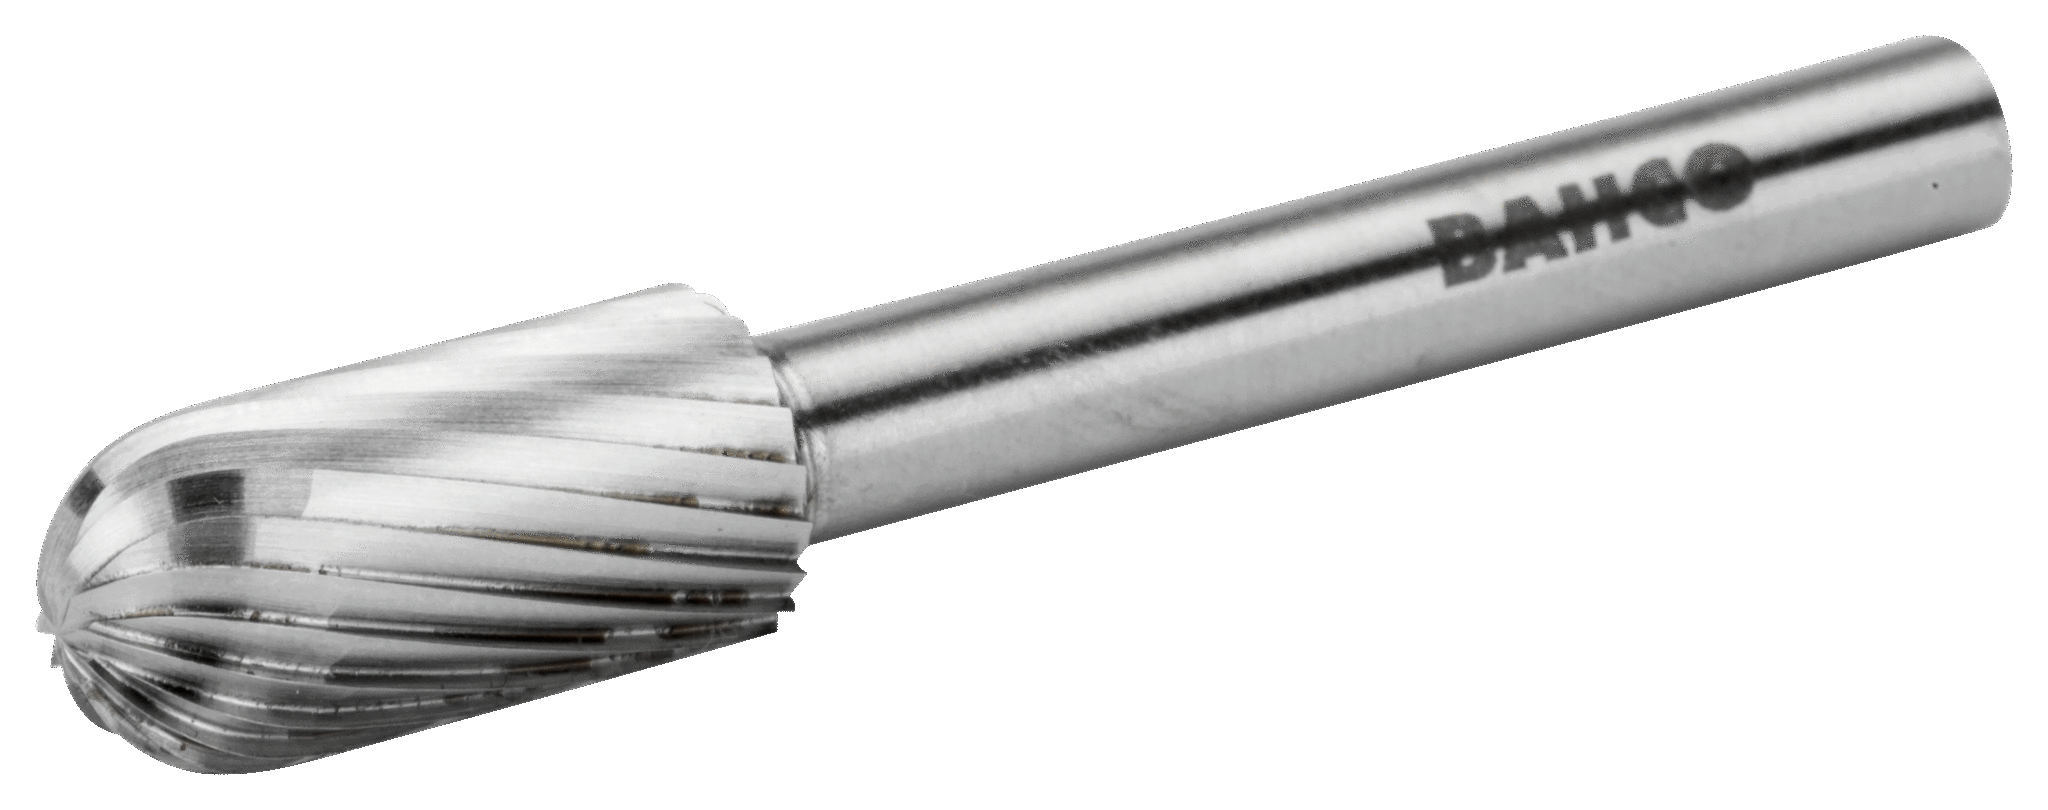 картинка Цилиндрическая, скругленная, индивидуальная упаковка BAHCO HSSG-C1020M-S от магазина "Элит-инструмент"